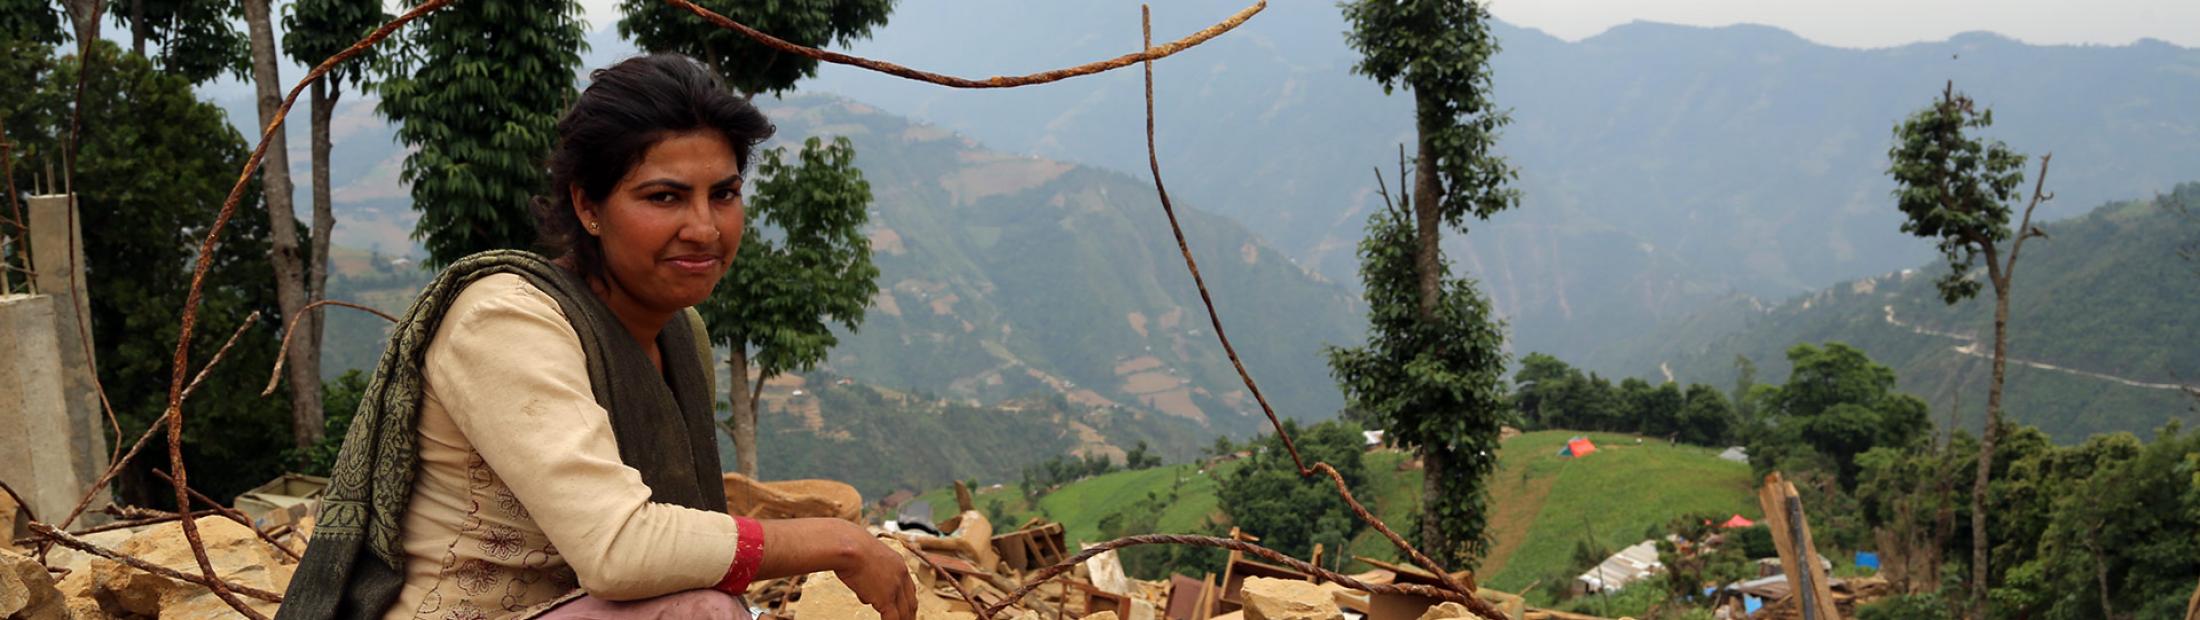 Pobreza definición: Nepal tras el terremoto